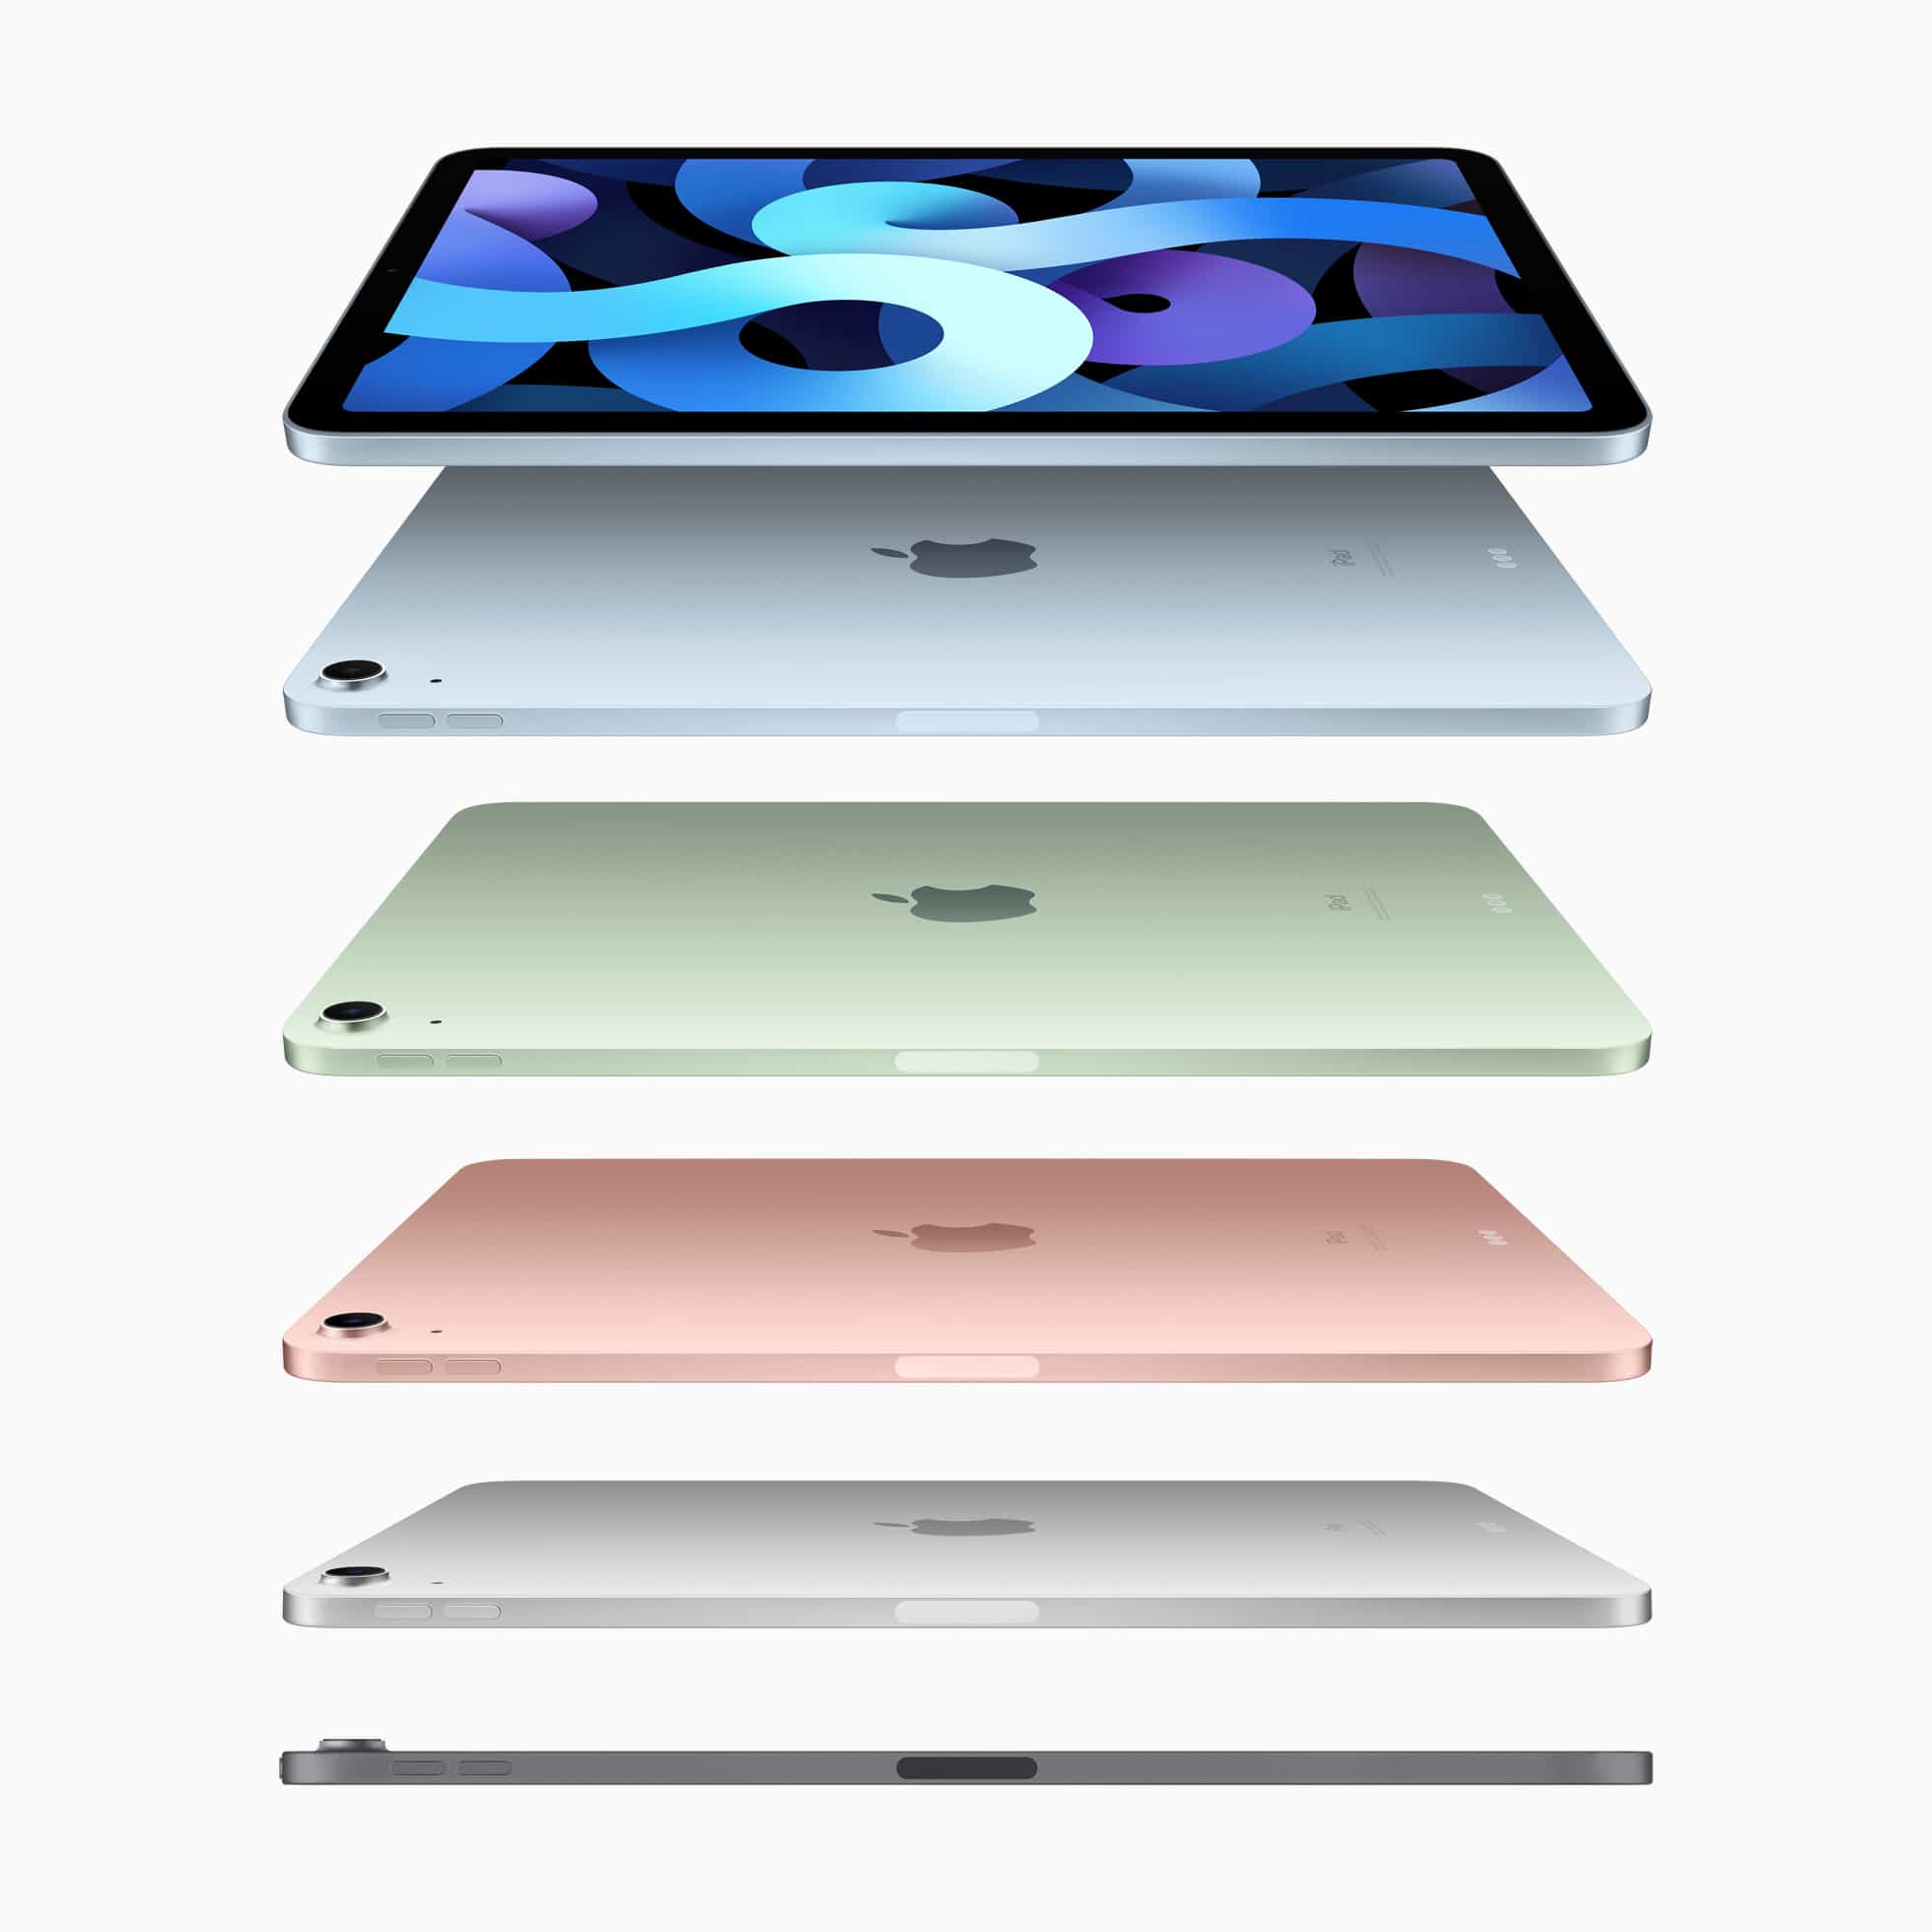 รีวิว iPad Air 4 ปี 2020 อัปเกรดใหม่ USB-C, Touch ID ปุ่ม Power และกรอบ